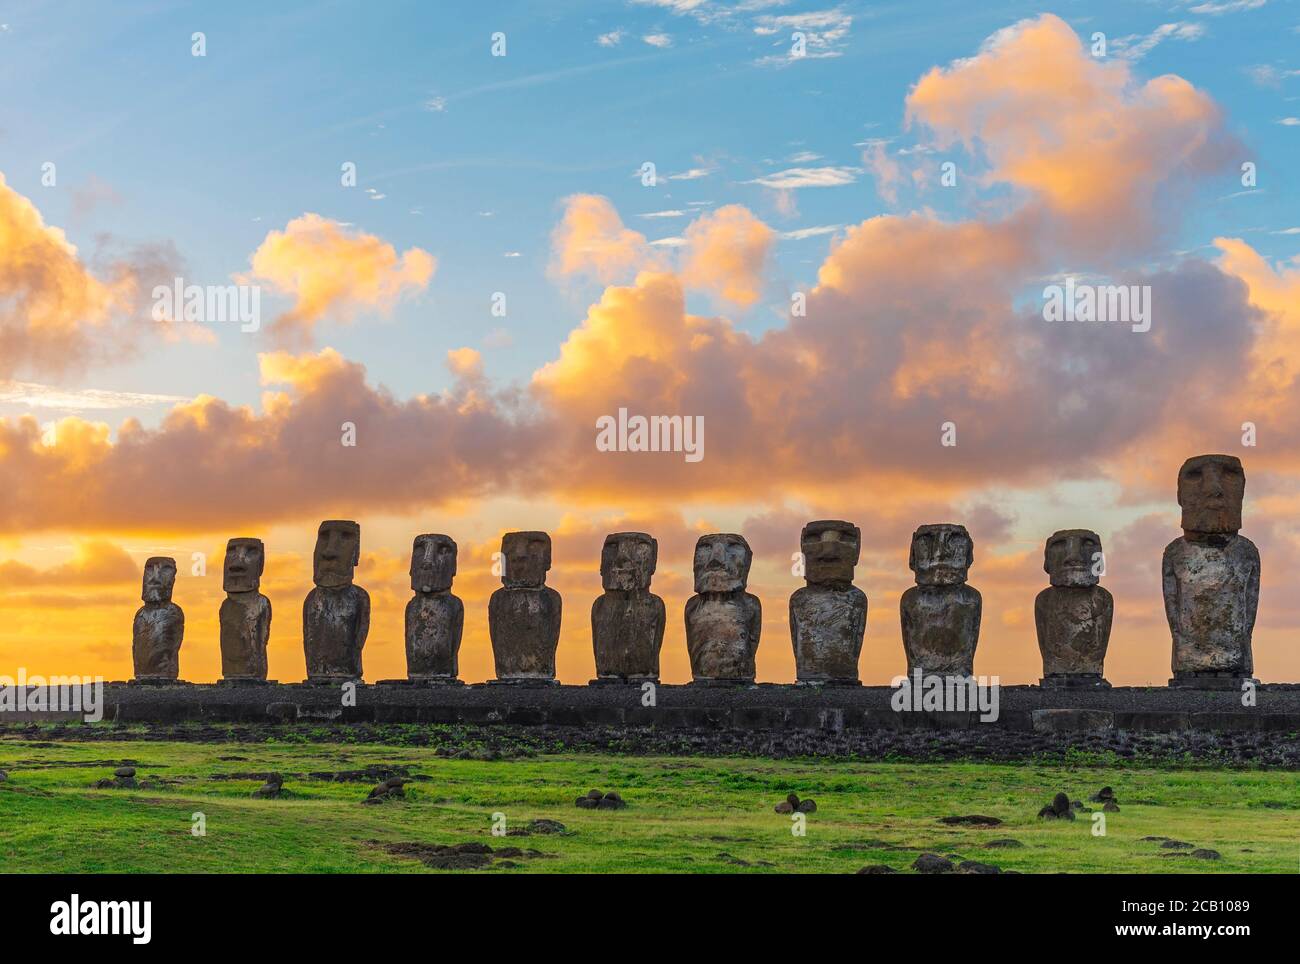 Ahu Tongariki with moai statues at sunrise, Easter Island, Chile. Stock Photo